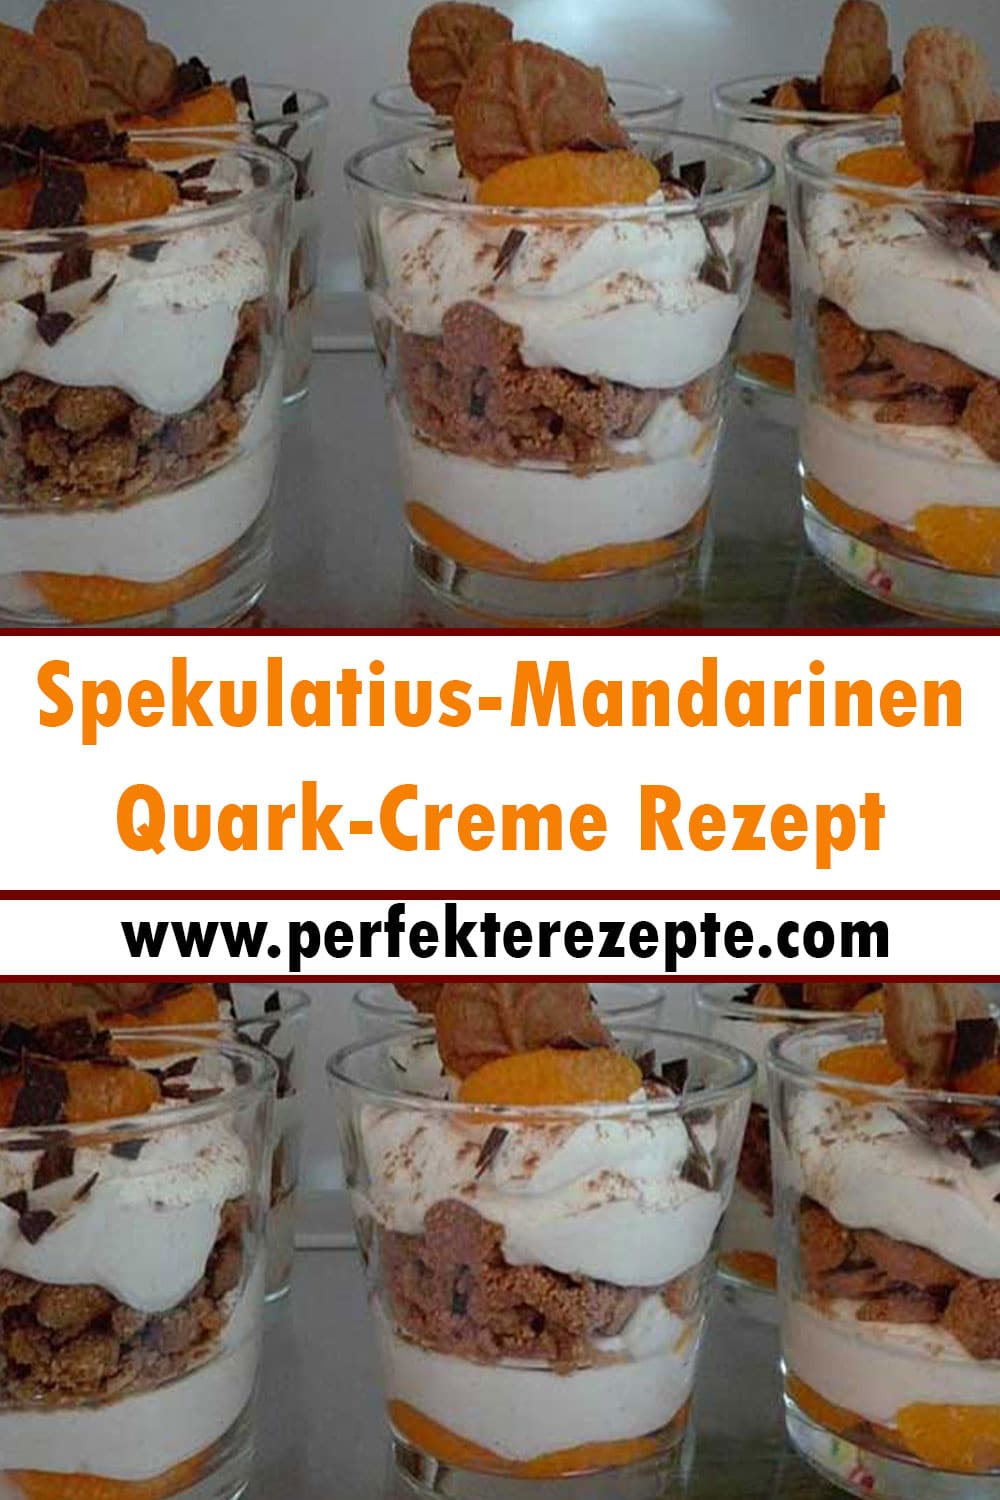 Spekulatius-Mandarinen-Quark-Creme Rezept